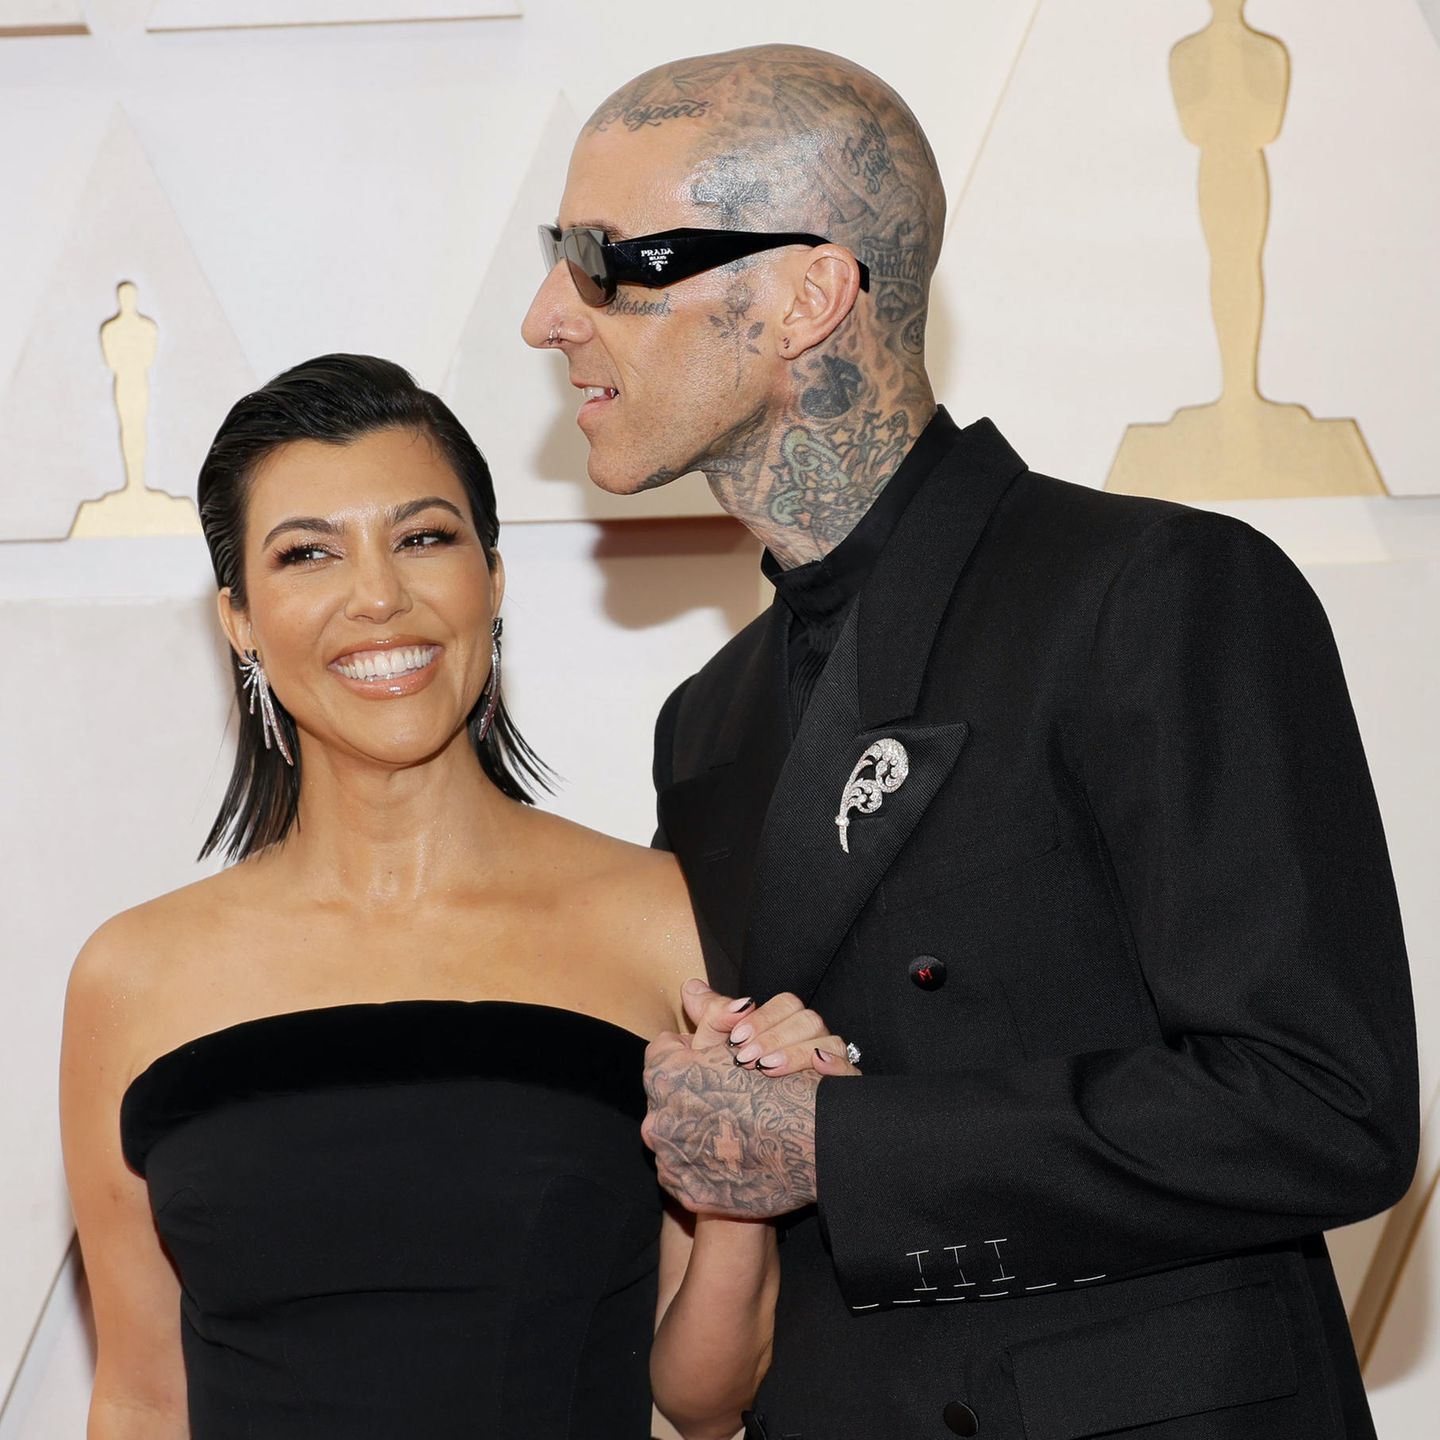 Nägel sind auf jeden Fall der neue Beautytrend während der Oscars 2022. Während Heidi auf Rosé und XXL-Krallen setzt, präsentiert Reality-Star Kourtney Kardashian French-Nails im schwarzen Gothic-Chic.